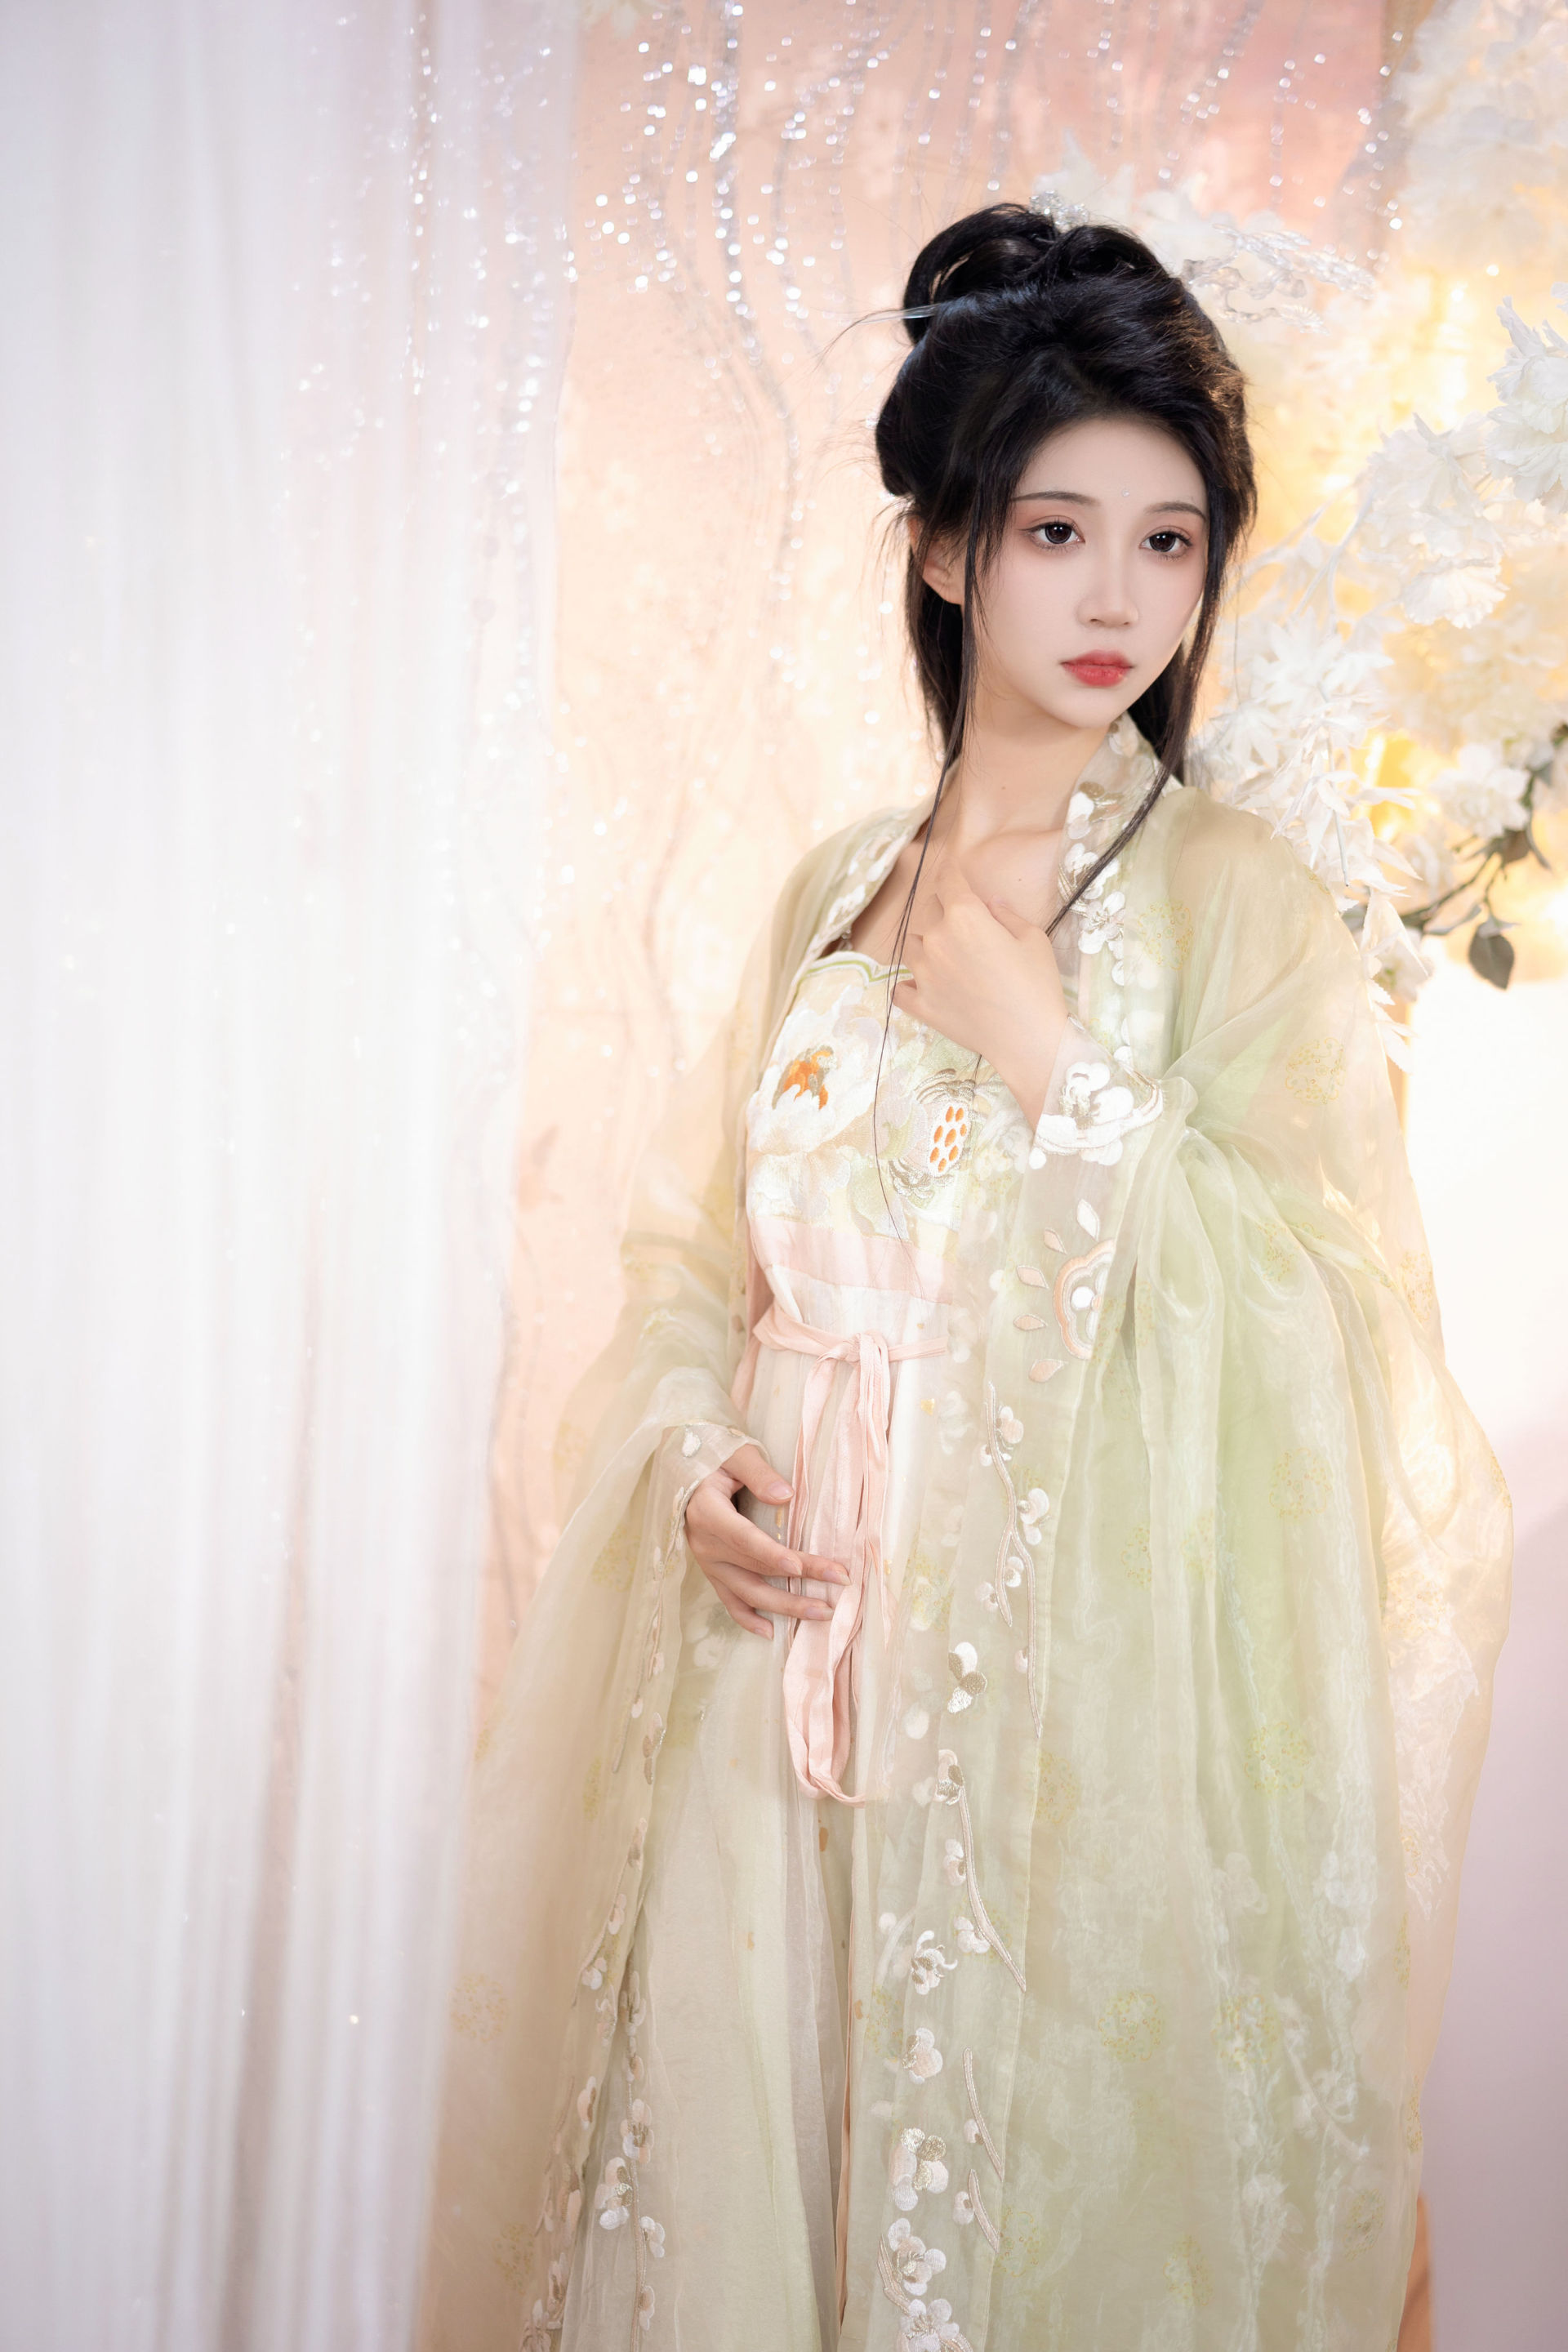 长乐 古装 汉服 模特 美人 古代 中国风